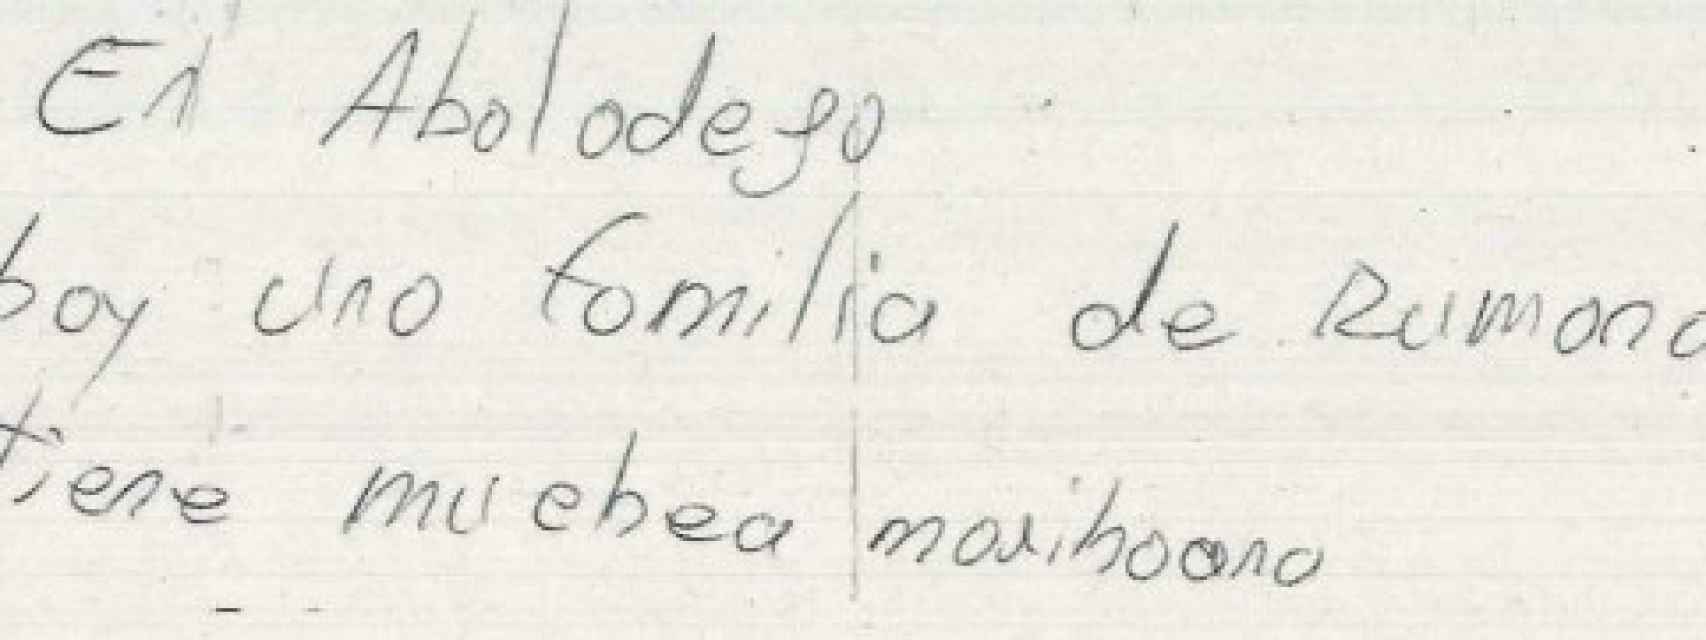 Parte de la segunda nota anónima que recibió la Guardia Civil donde se denuncia la presencia de narcos en Valera de Abajo.